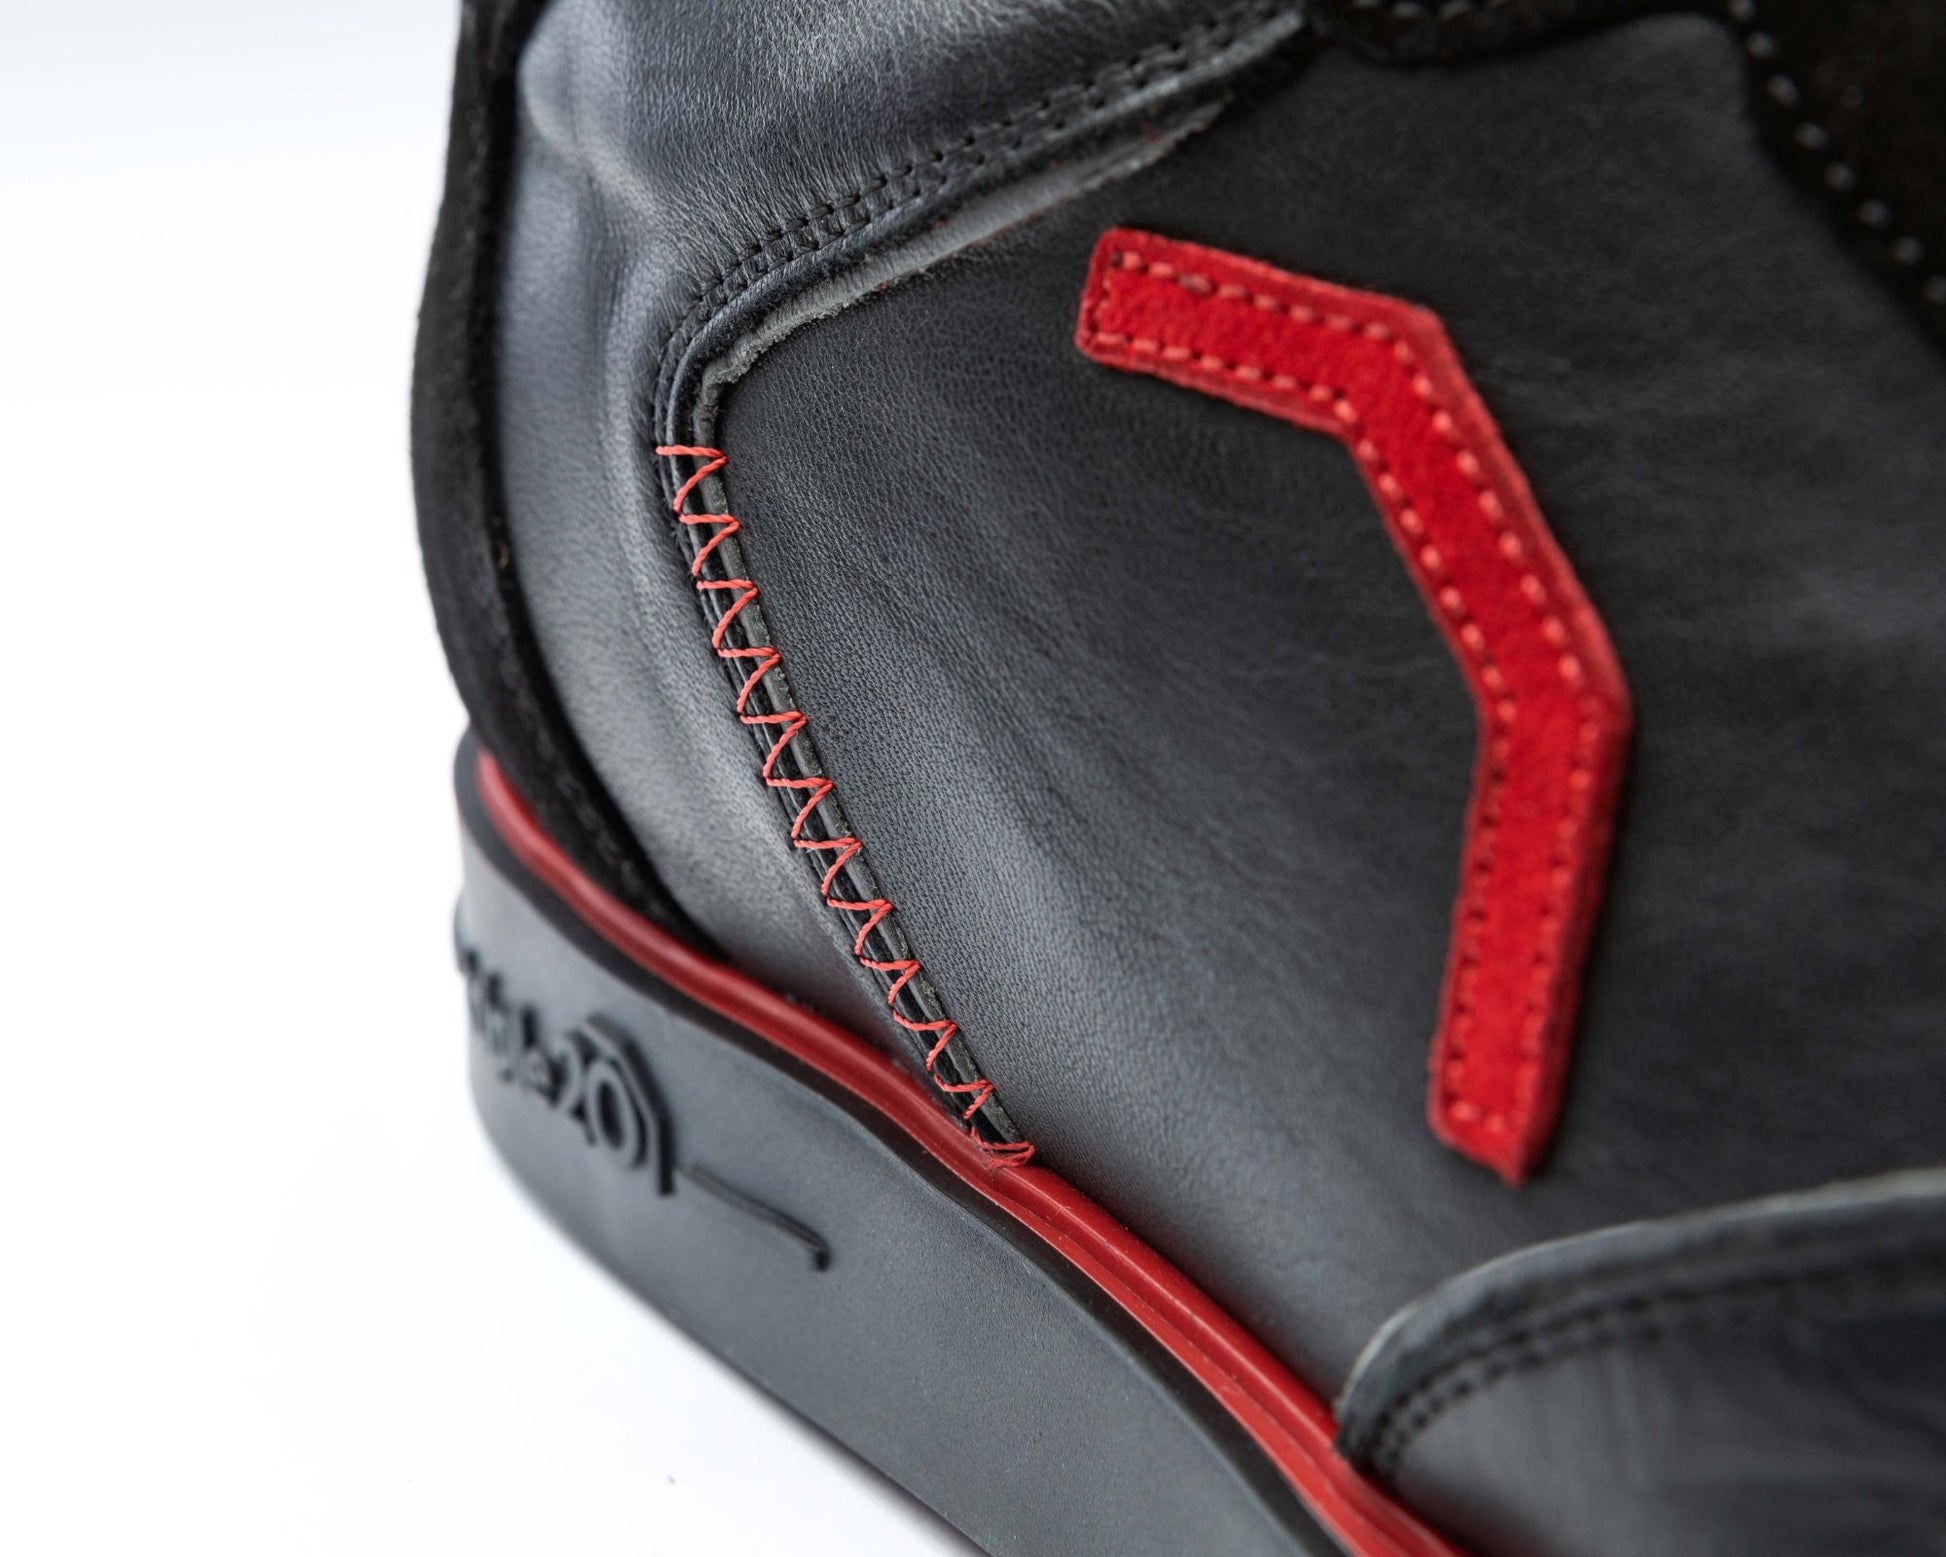 Detailfoto des feurig roten Emblems aus Leder, welches auf einem schwarzen Vollleder-Dartschuh von triple20 angebracht ist. Der deutsche Hersteller legt nicht nicht nur Wert auf Funktion, sondern auch auf modisches Design.